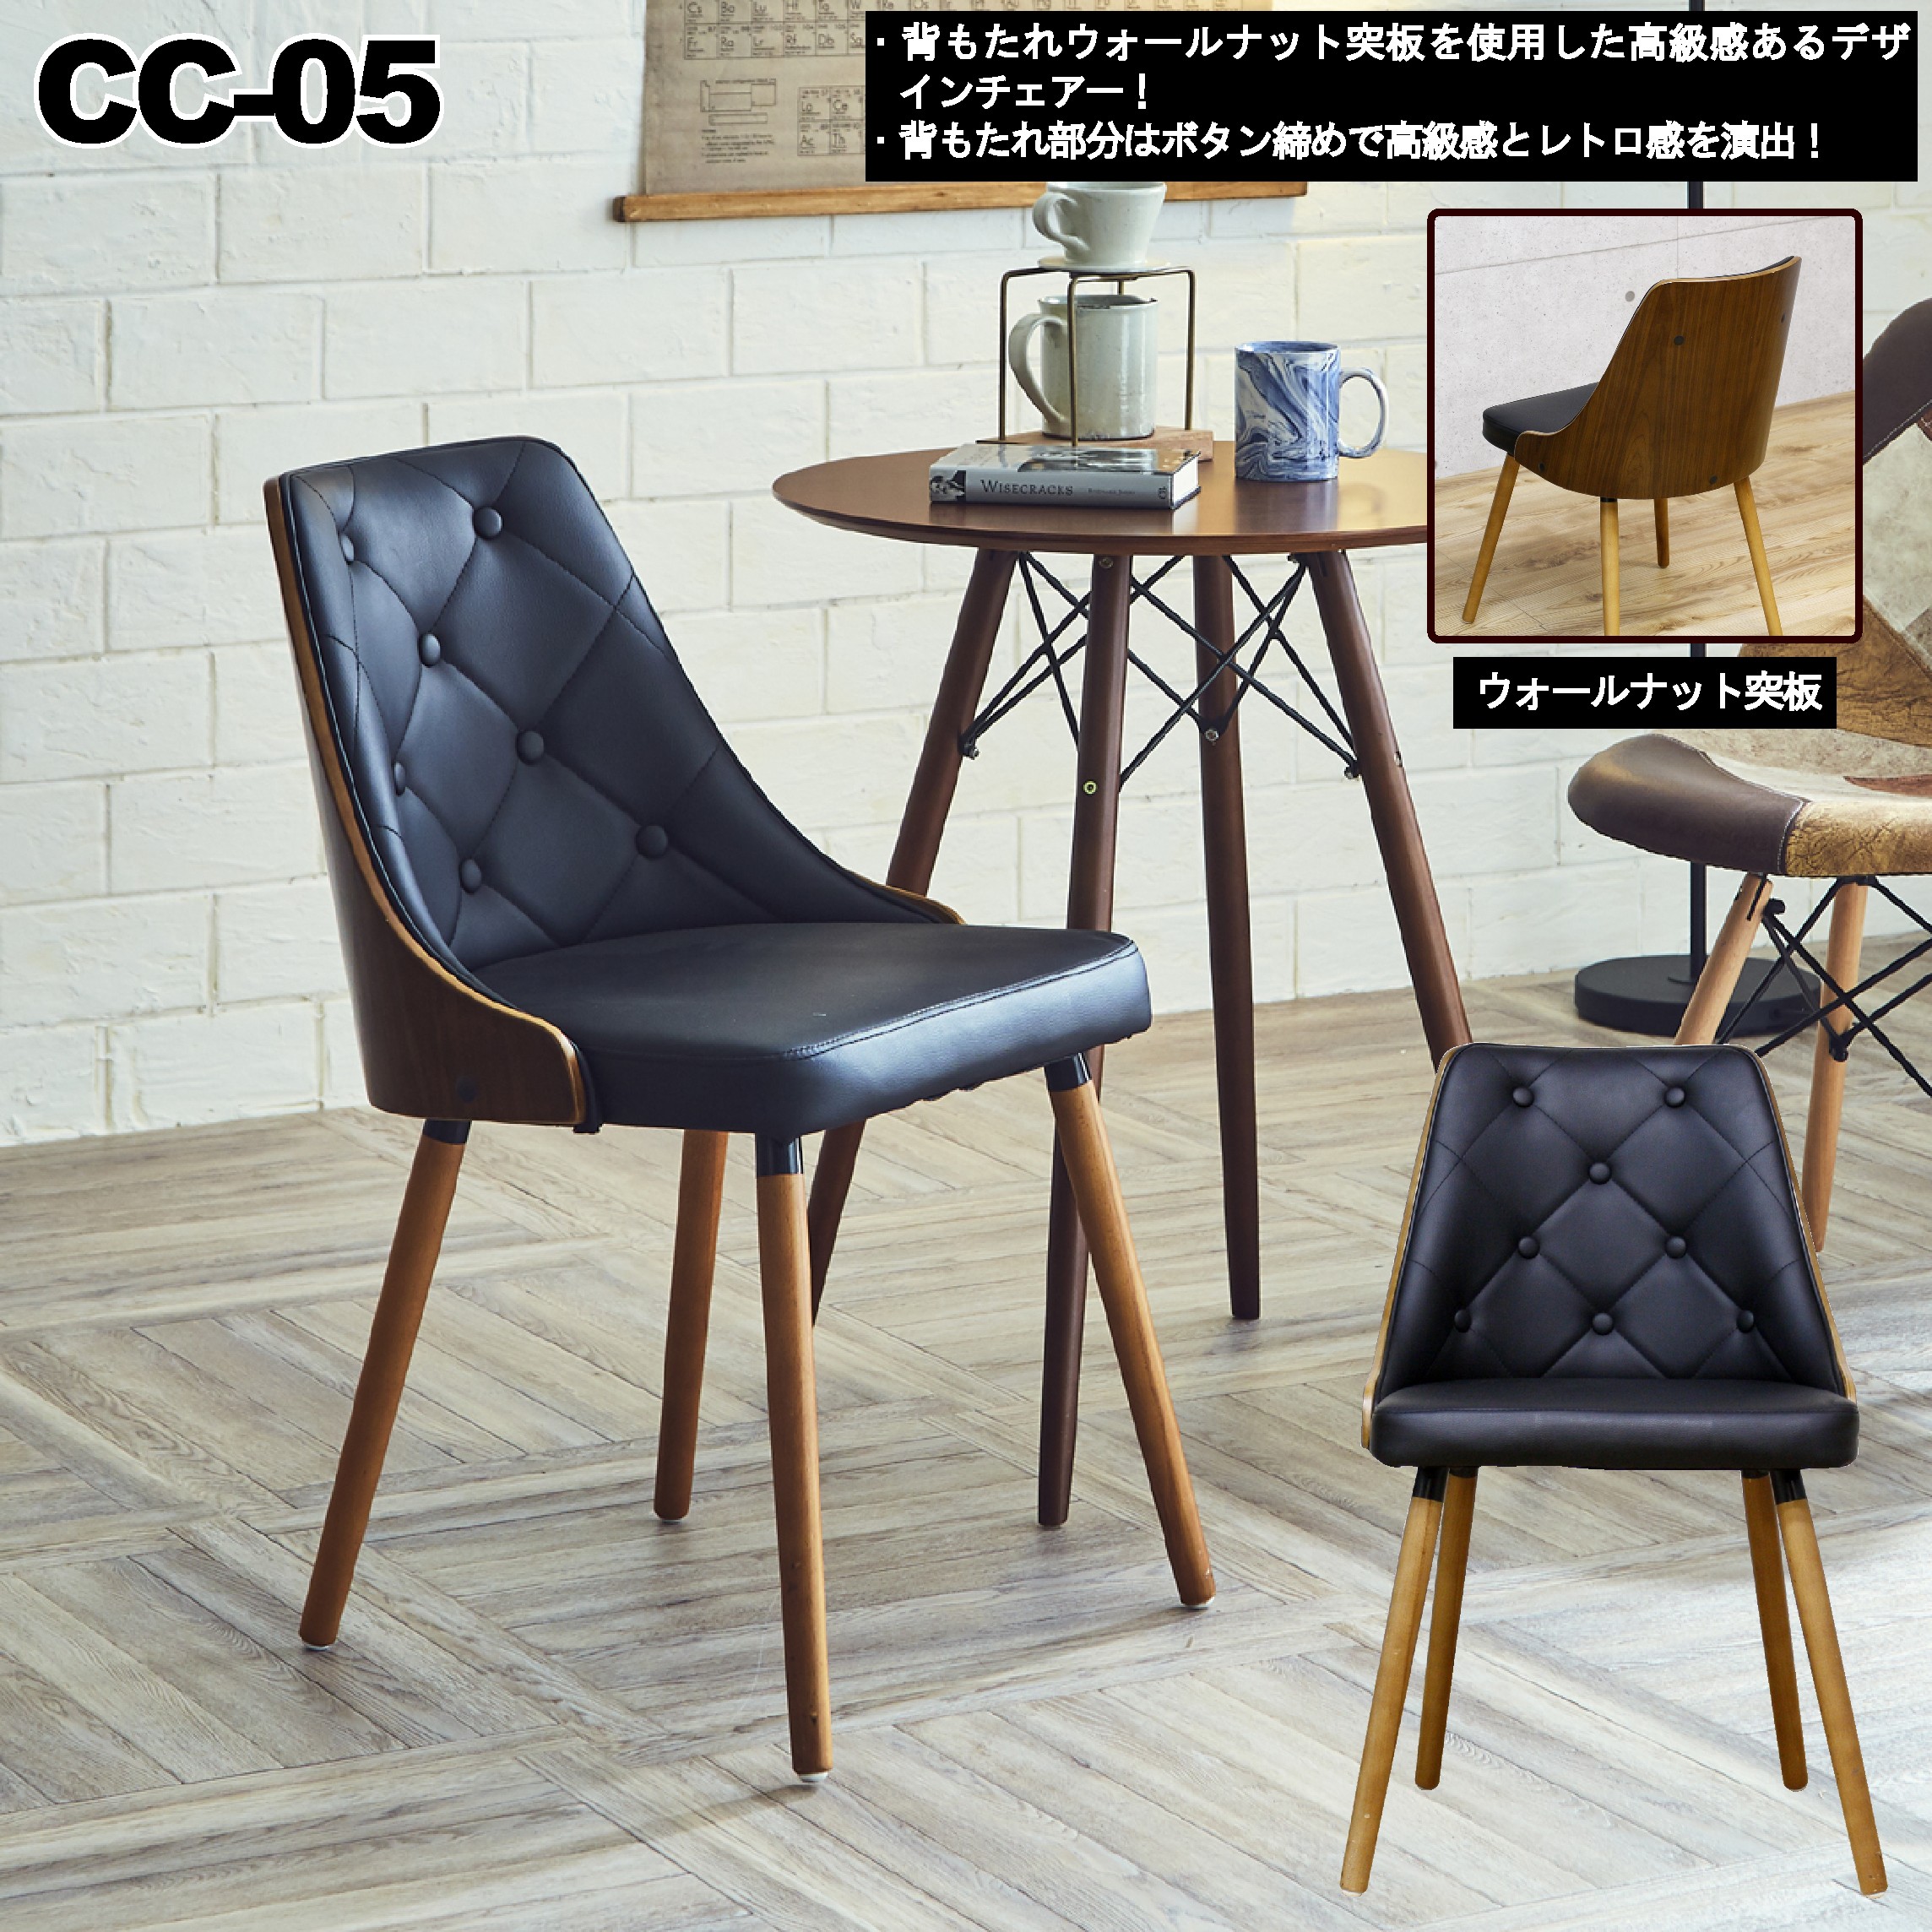 カジュアルチェア CC-05 | 家具全般のネットショップ商材の卸のこと 